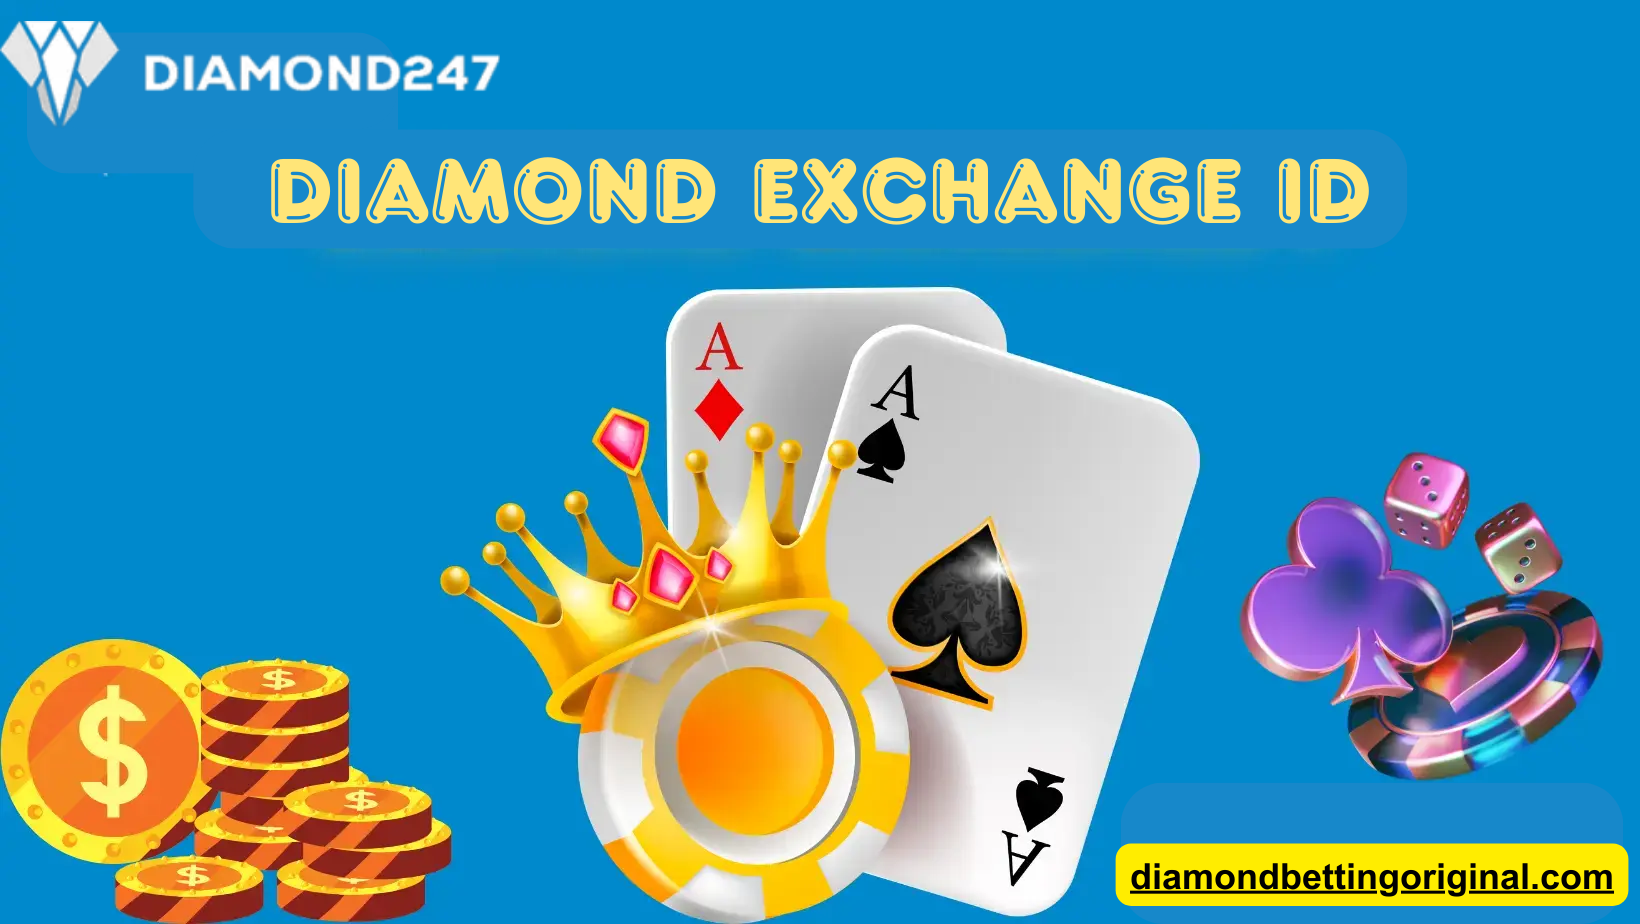 Diamond exchange ID